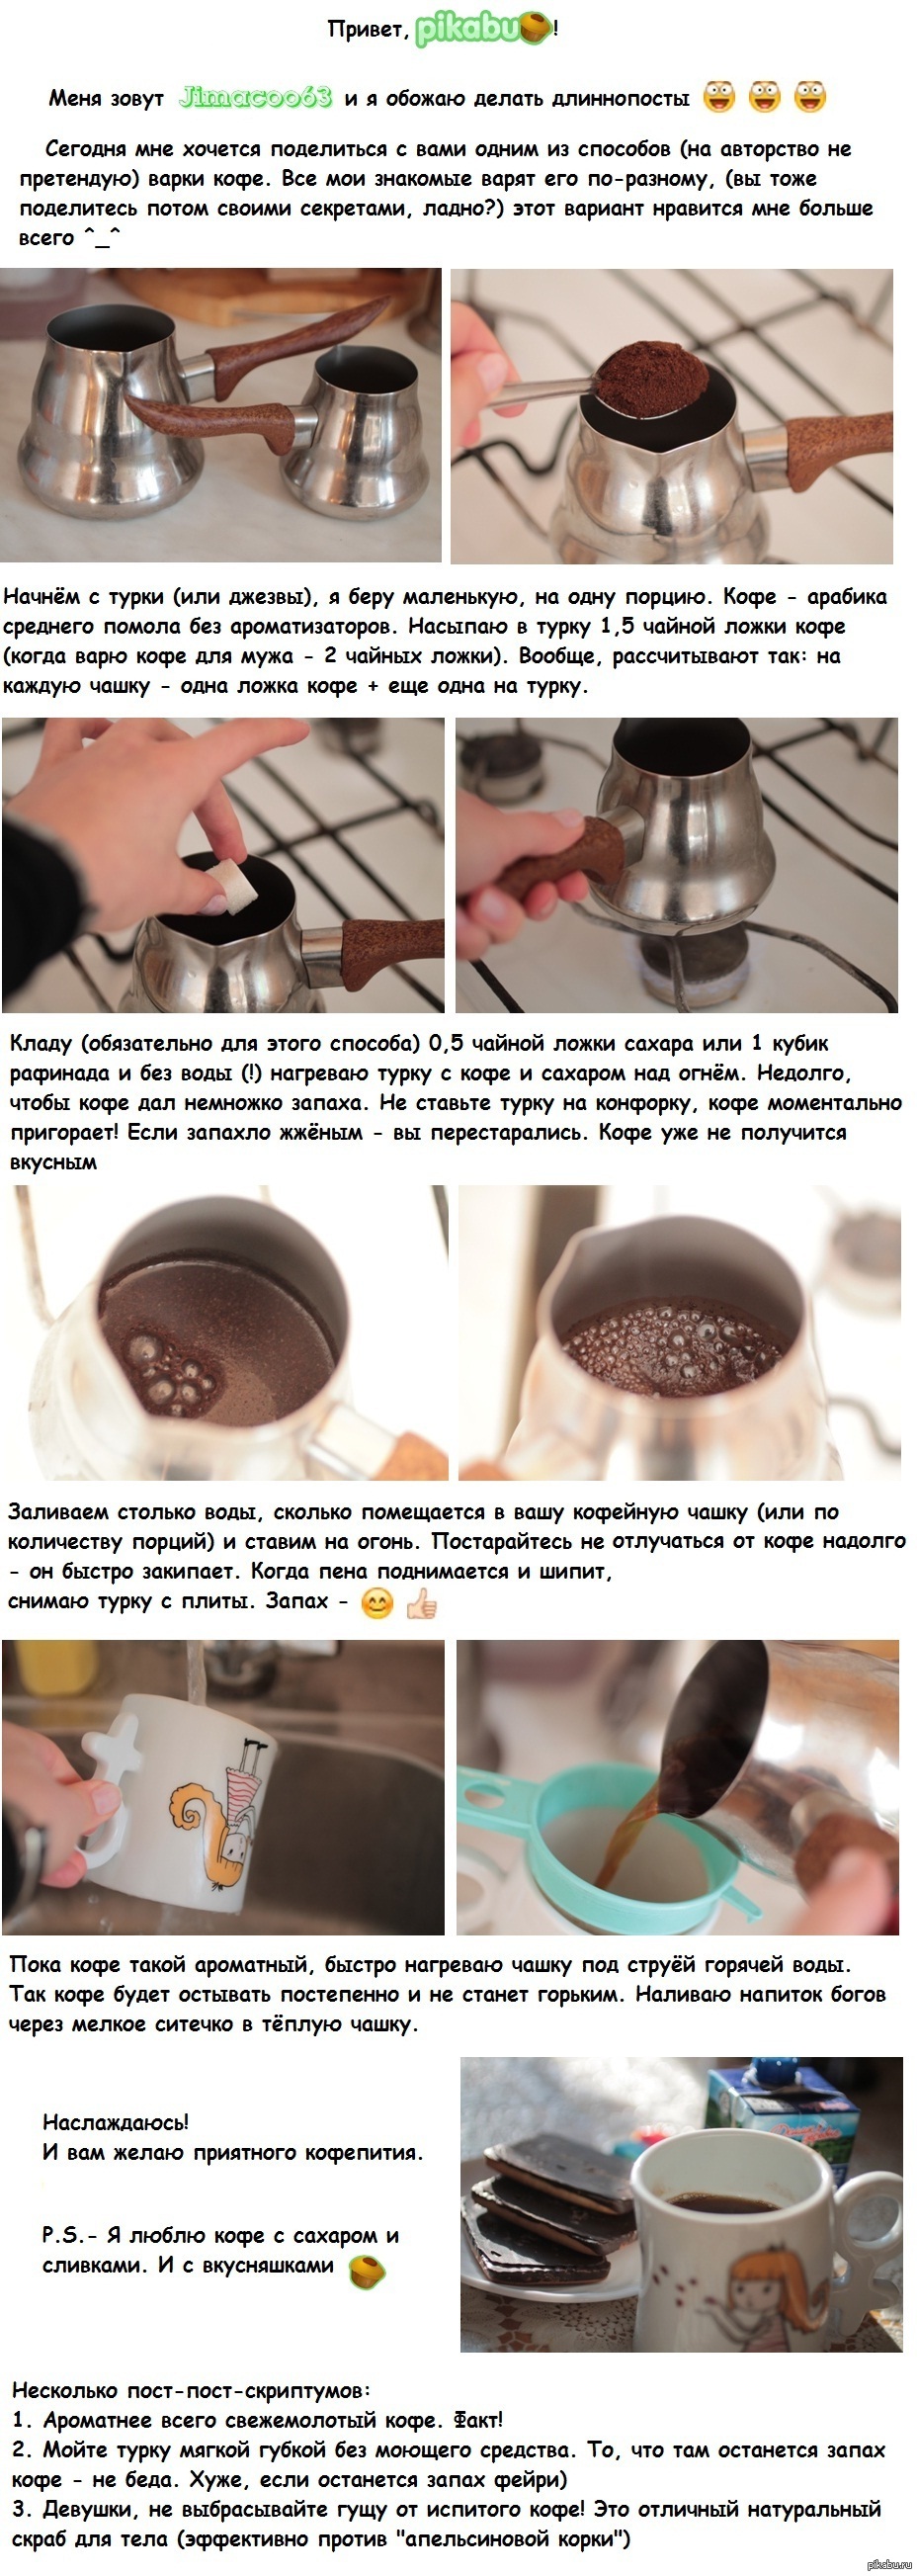 Как сварить кофе рецепт. Кофе в турке. Кофе в турке пропорции кофе и воды. Приготовление кофе в турке. Как варить кофе.